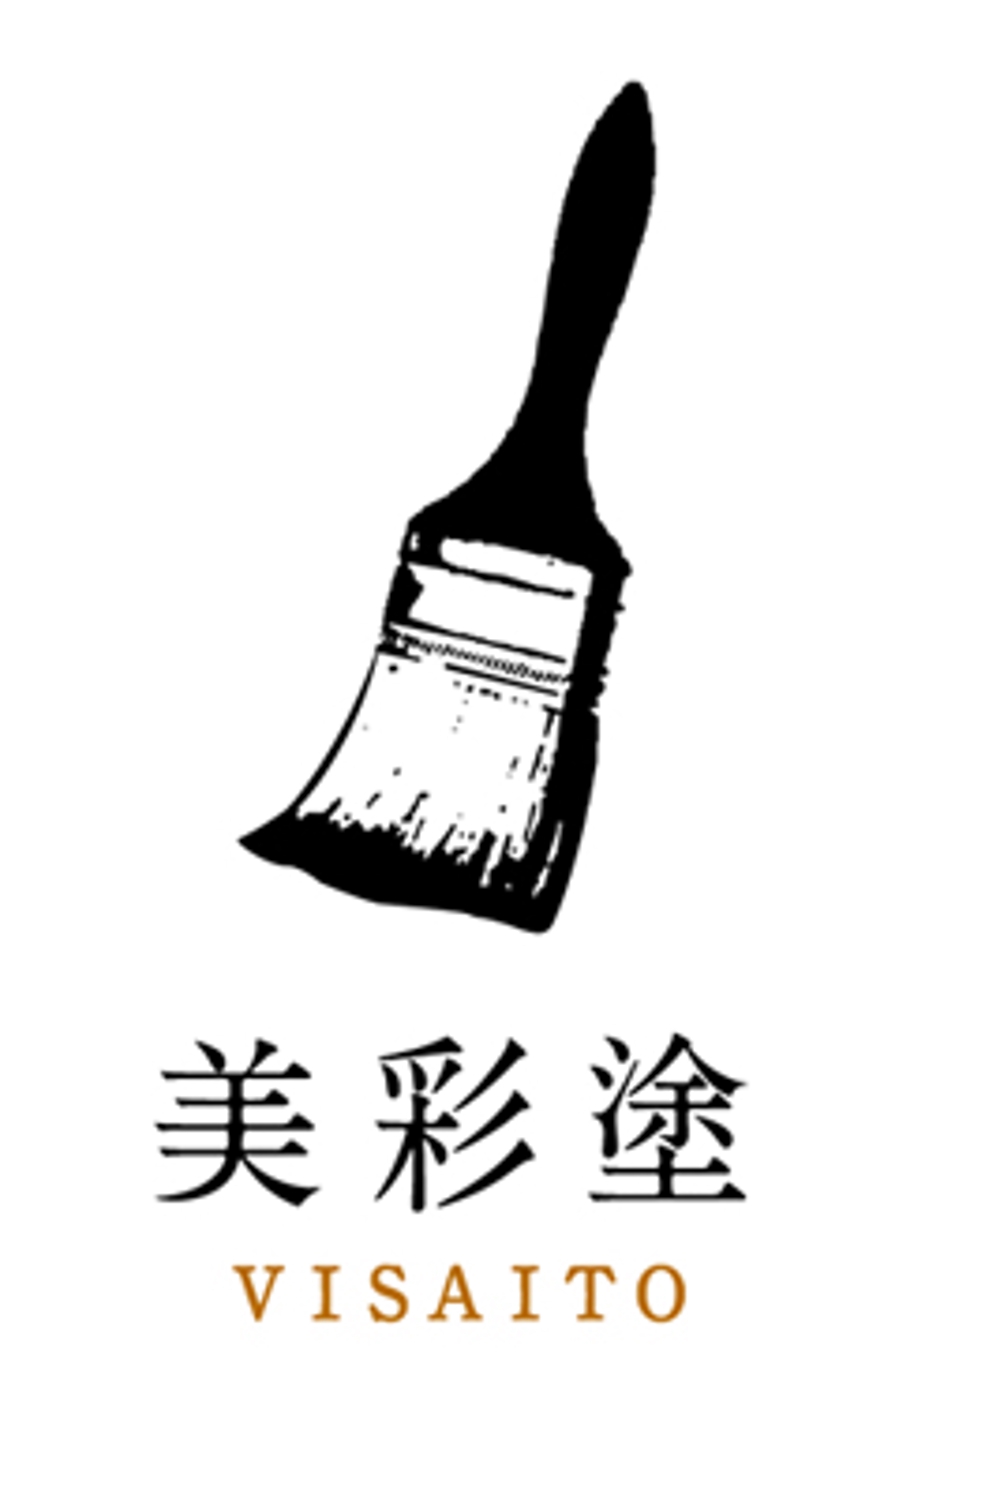 塗装会社のロゴ